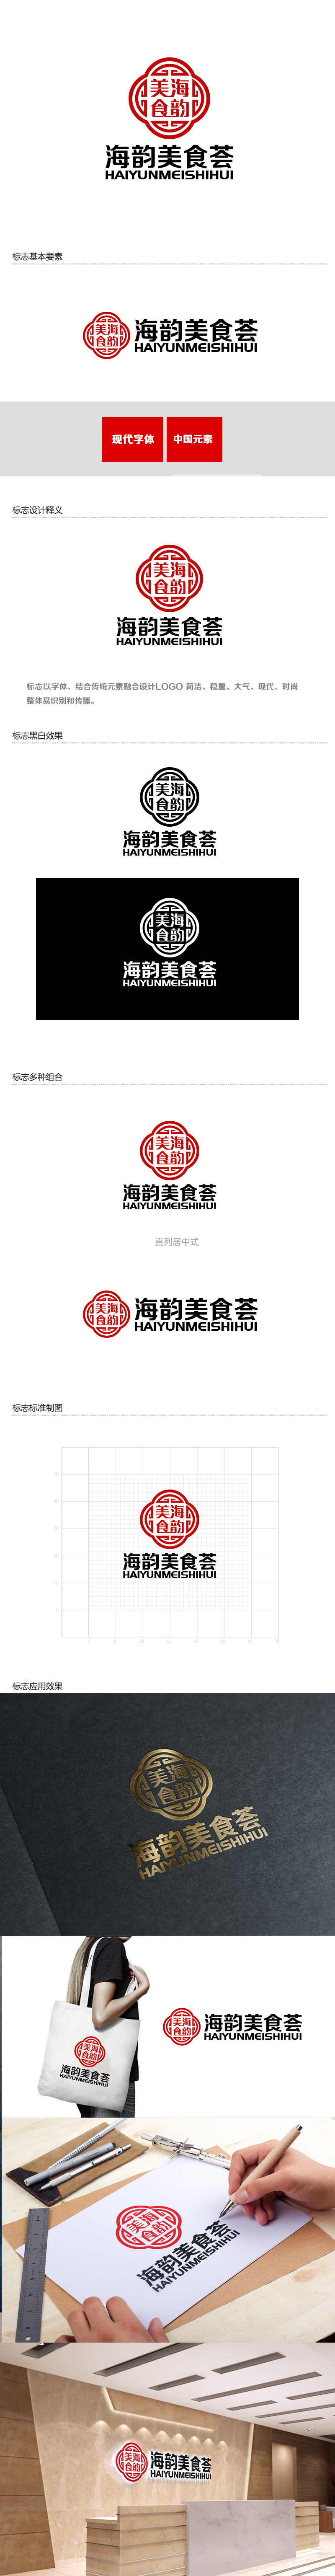 余亮亮的海韵美食荟logo设计